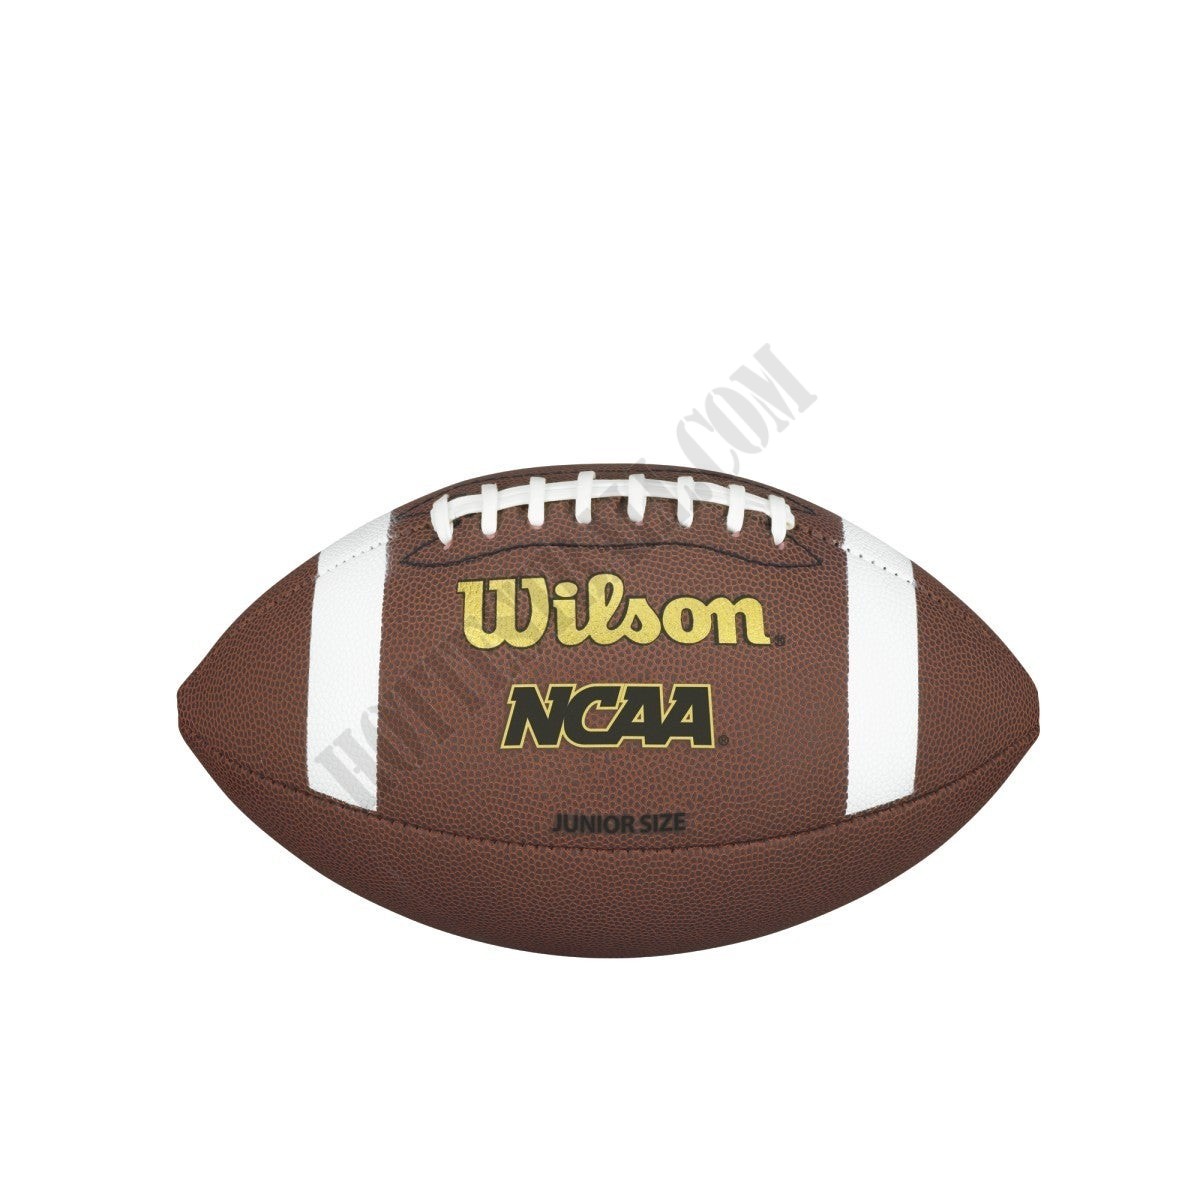 NCAA TDJ Composite Football - Junior - Wilson Discount Store - -0